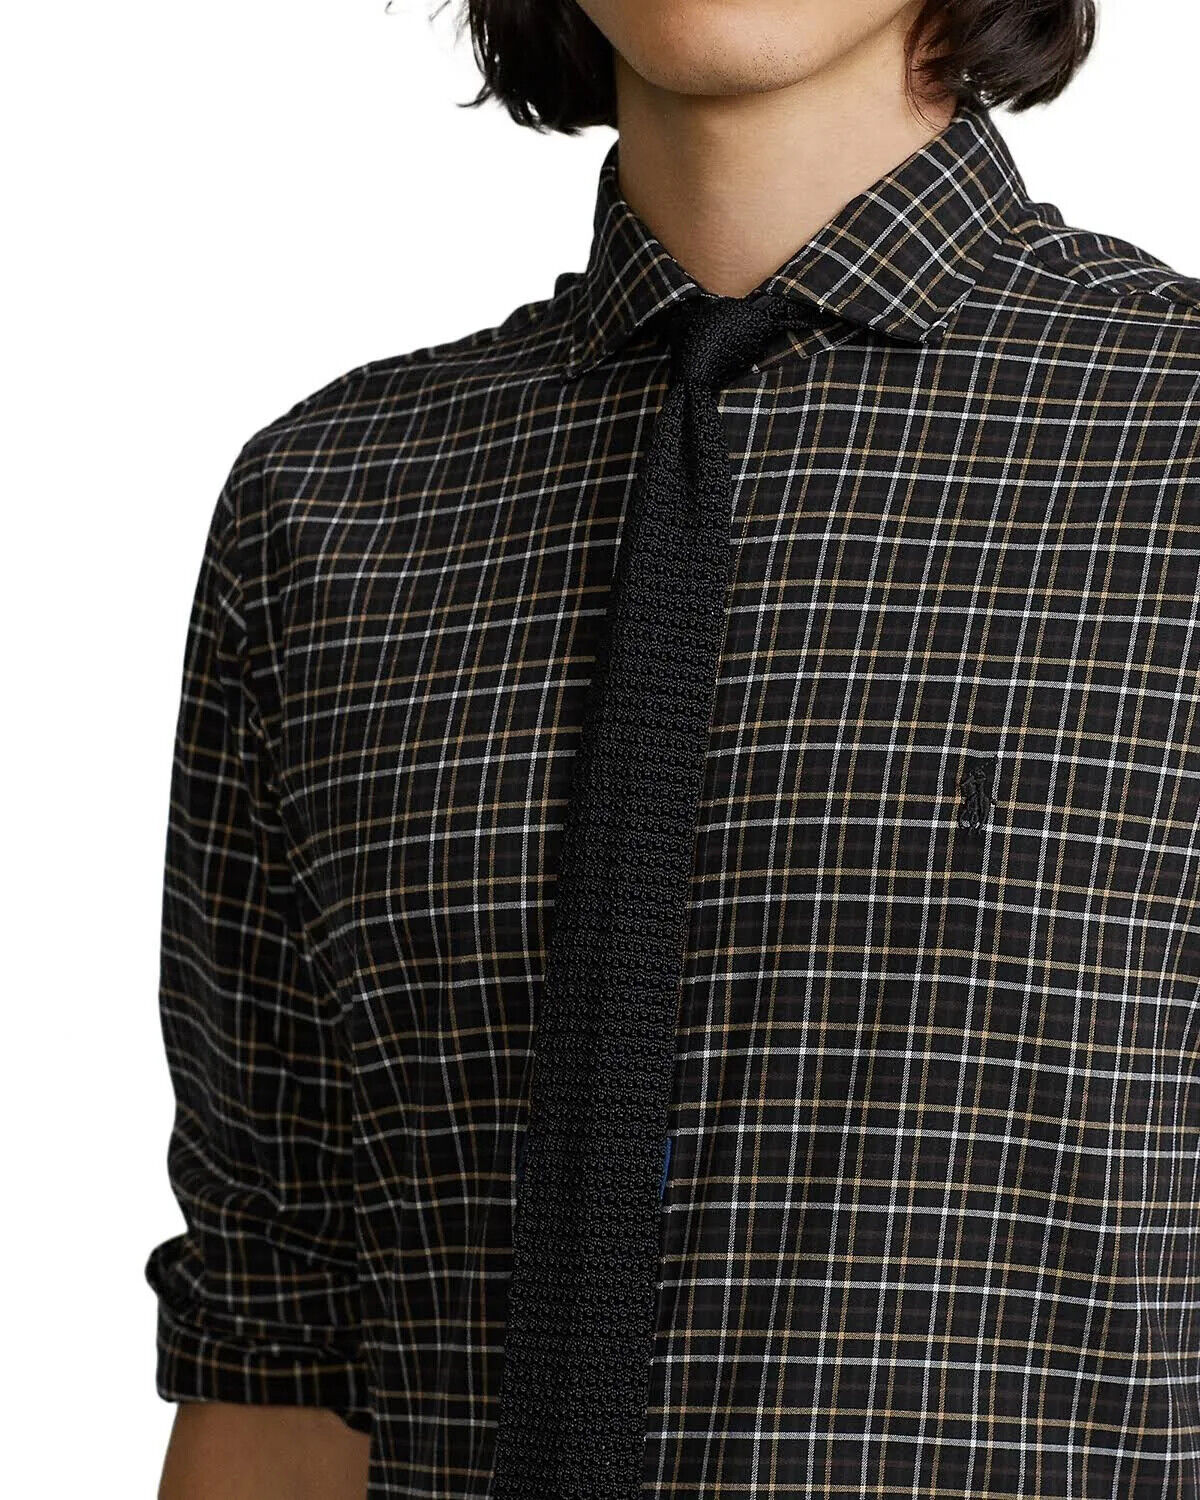 Polo Ralph Lauren Men's Classic-Fit Twill Shirt  Color Black/Tan Size S